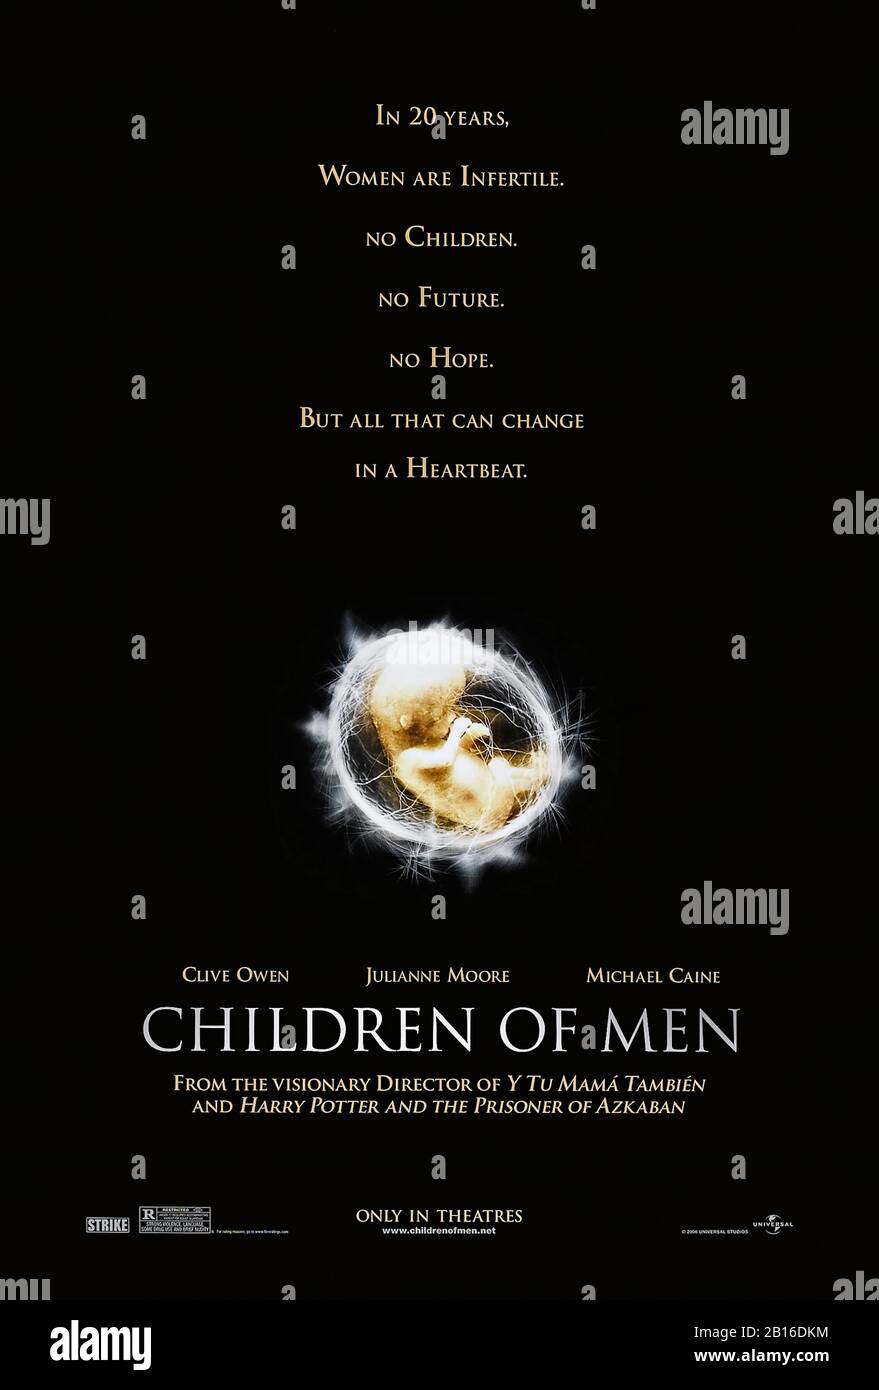 Children of Men (2006) dirigida por Alfonso Cuarón y protagonizada por Julianne Moore, Clive Owen, Chiwetel Ejiofor y Michael Caine. P.D. el mundo distópico futuro de la inmigración ilegal masiva y la infertilidad de James golpea la pantalla grande. Foto de stock